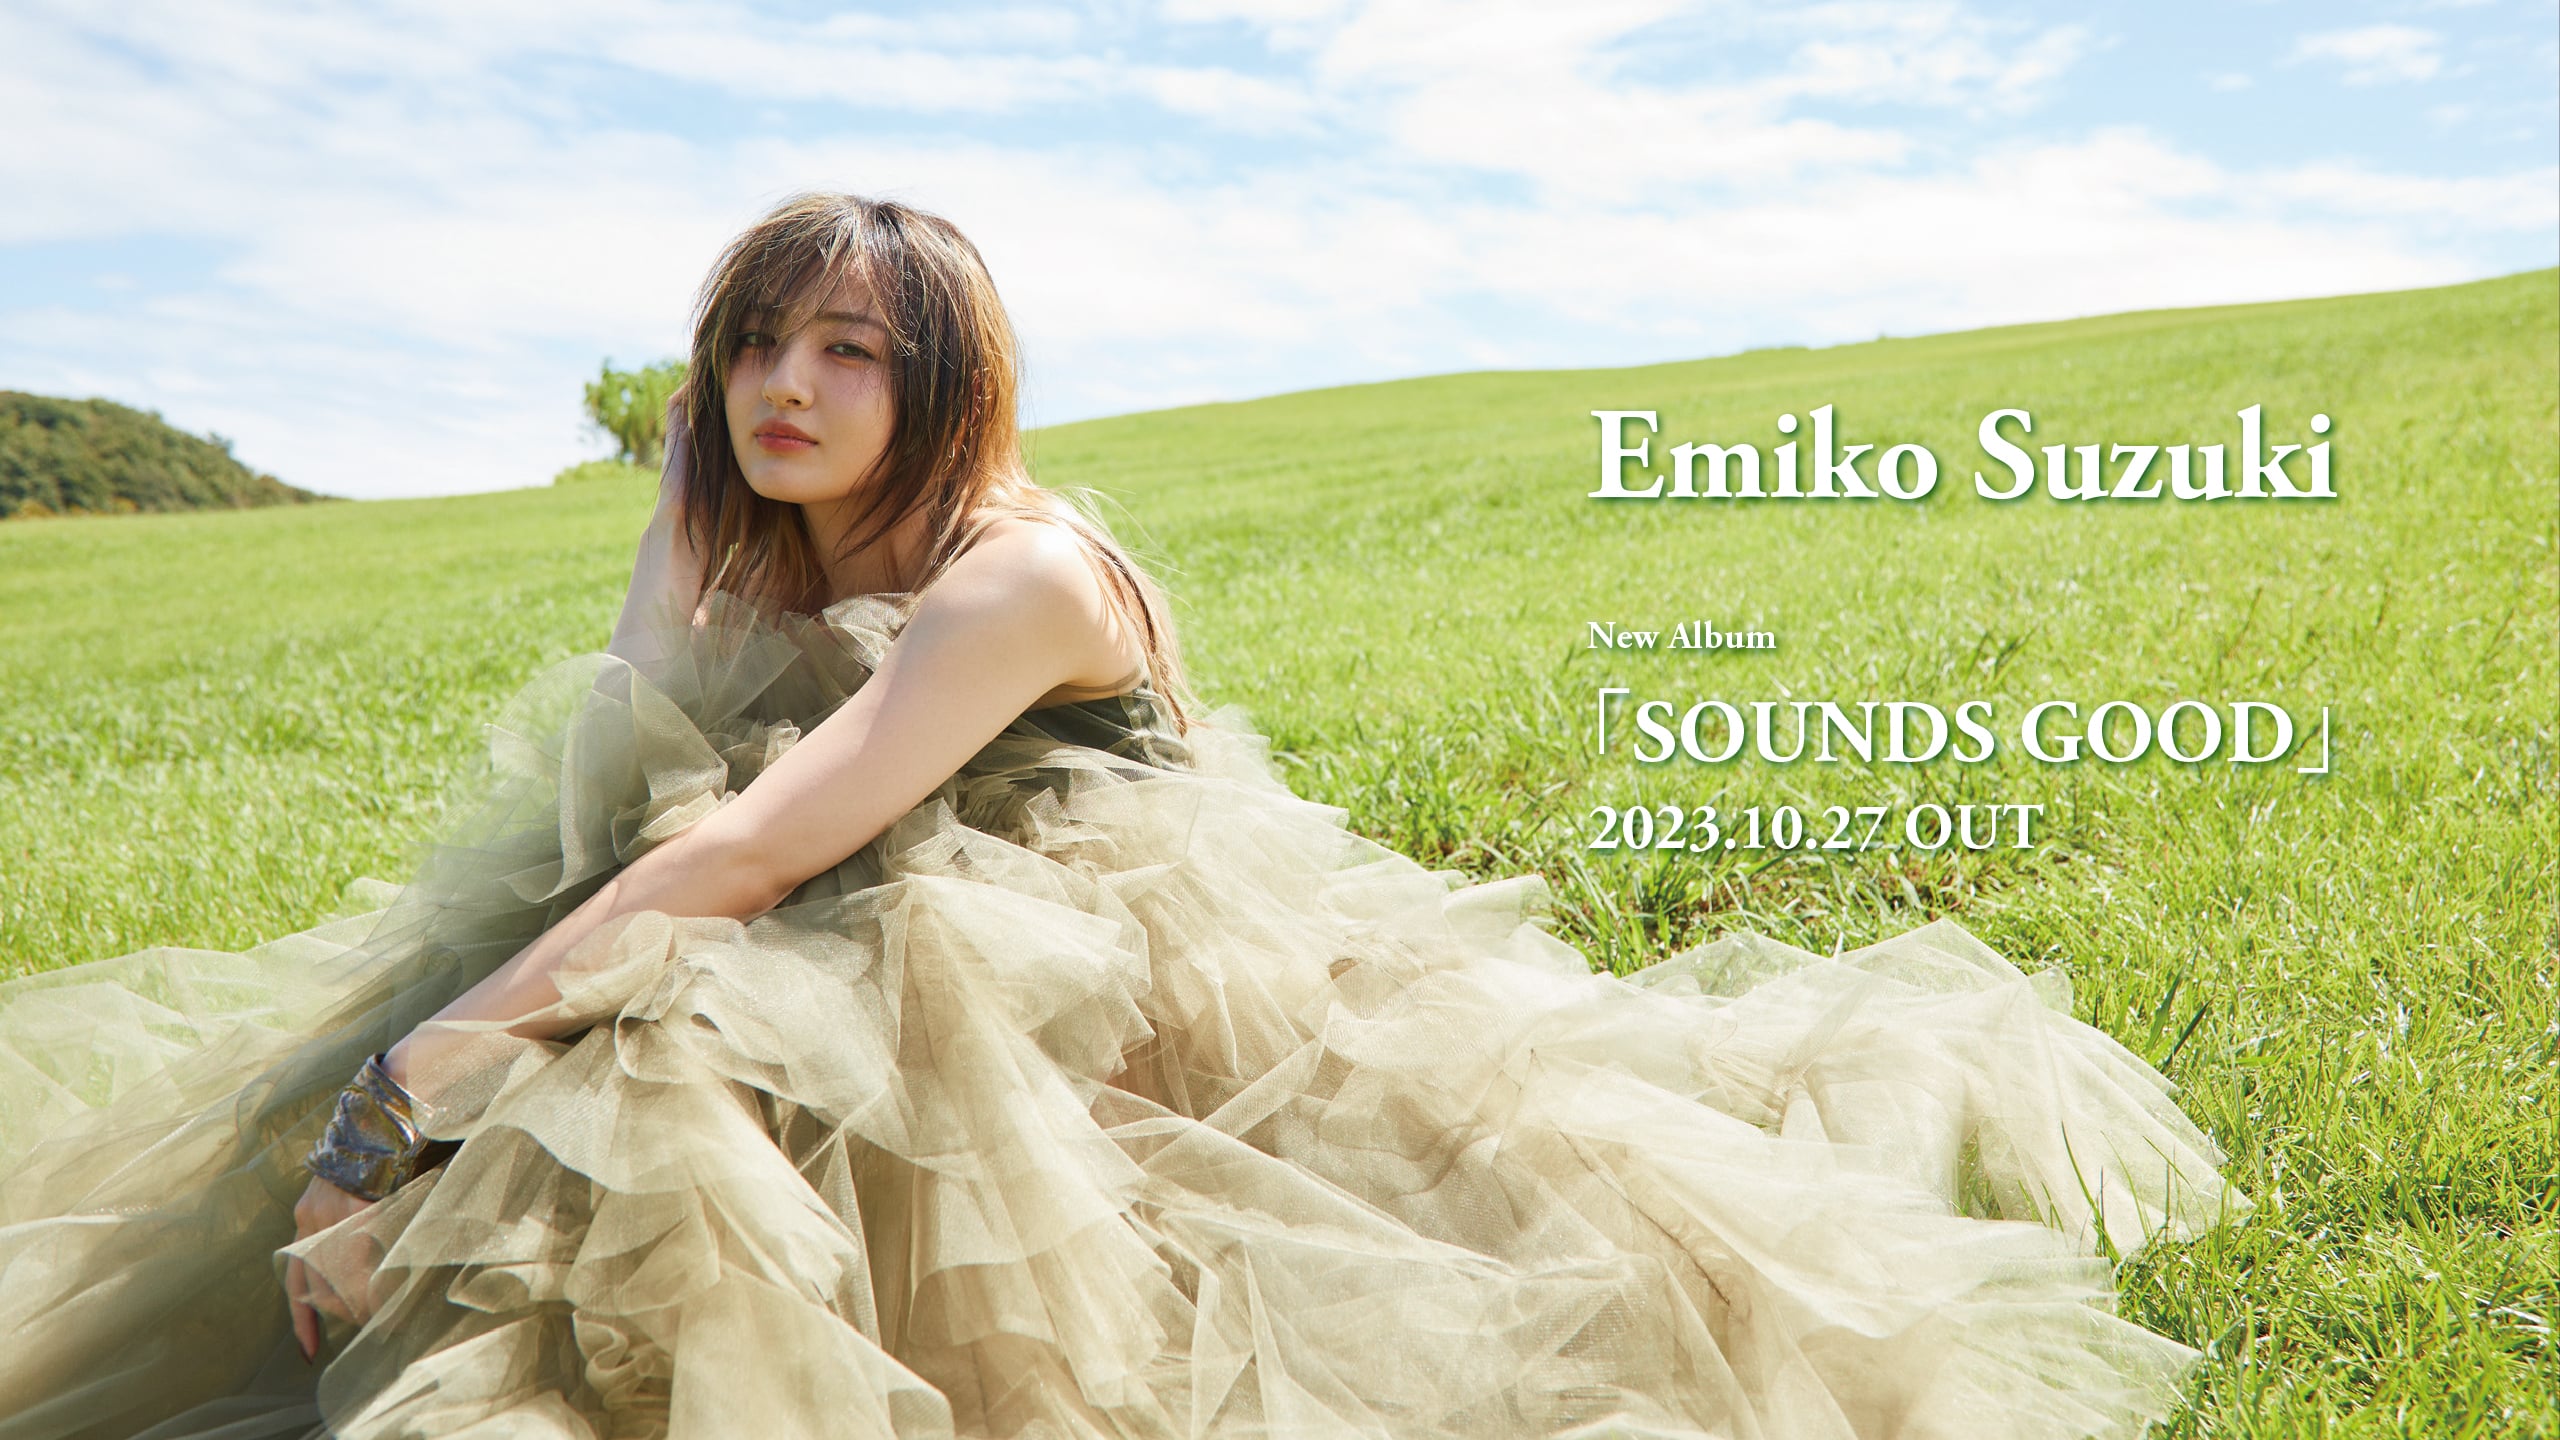 Emiko Suzuki New Album "SOUNDS GOOD" 2023.10.27 OUT